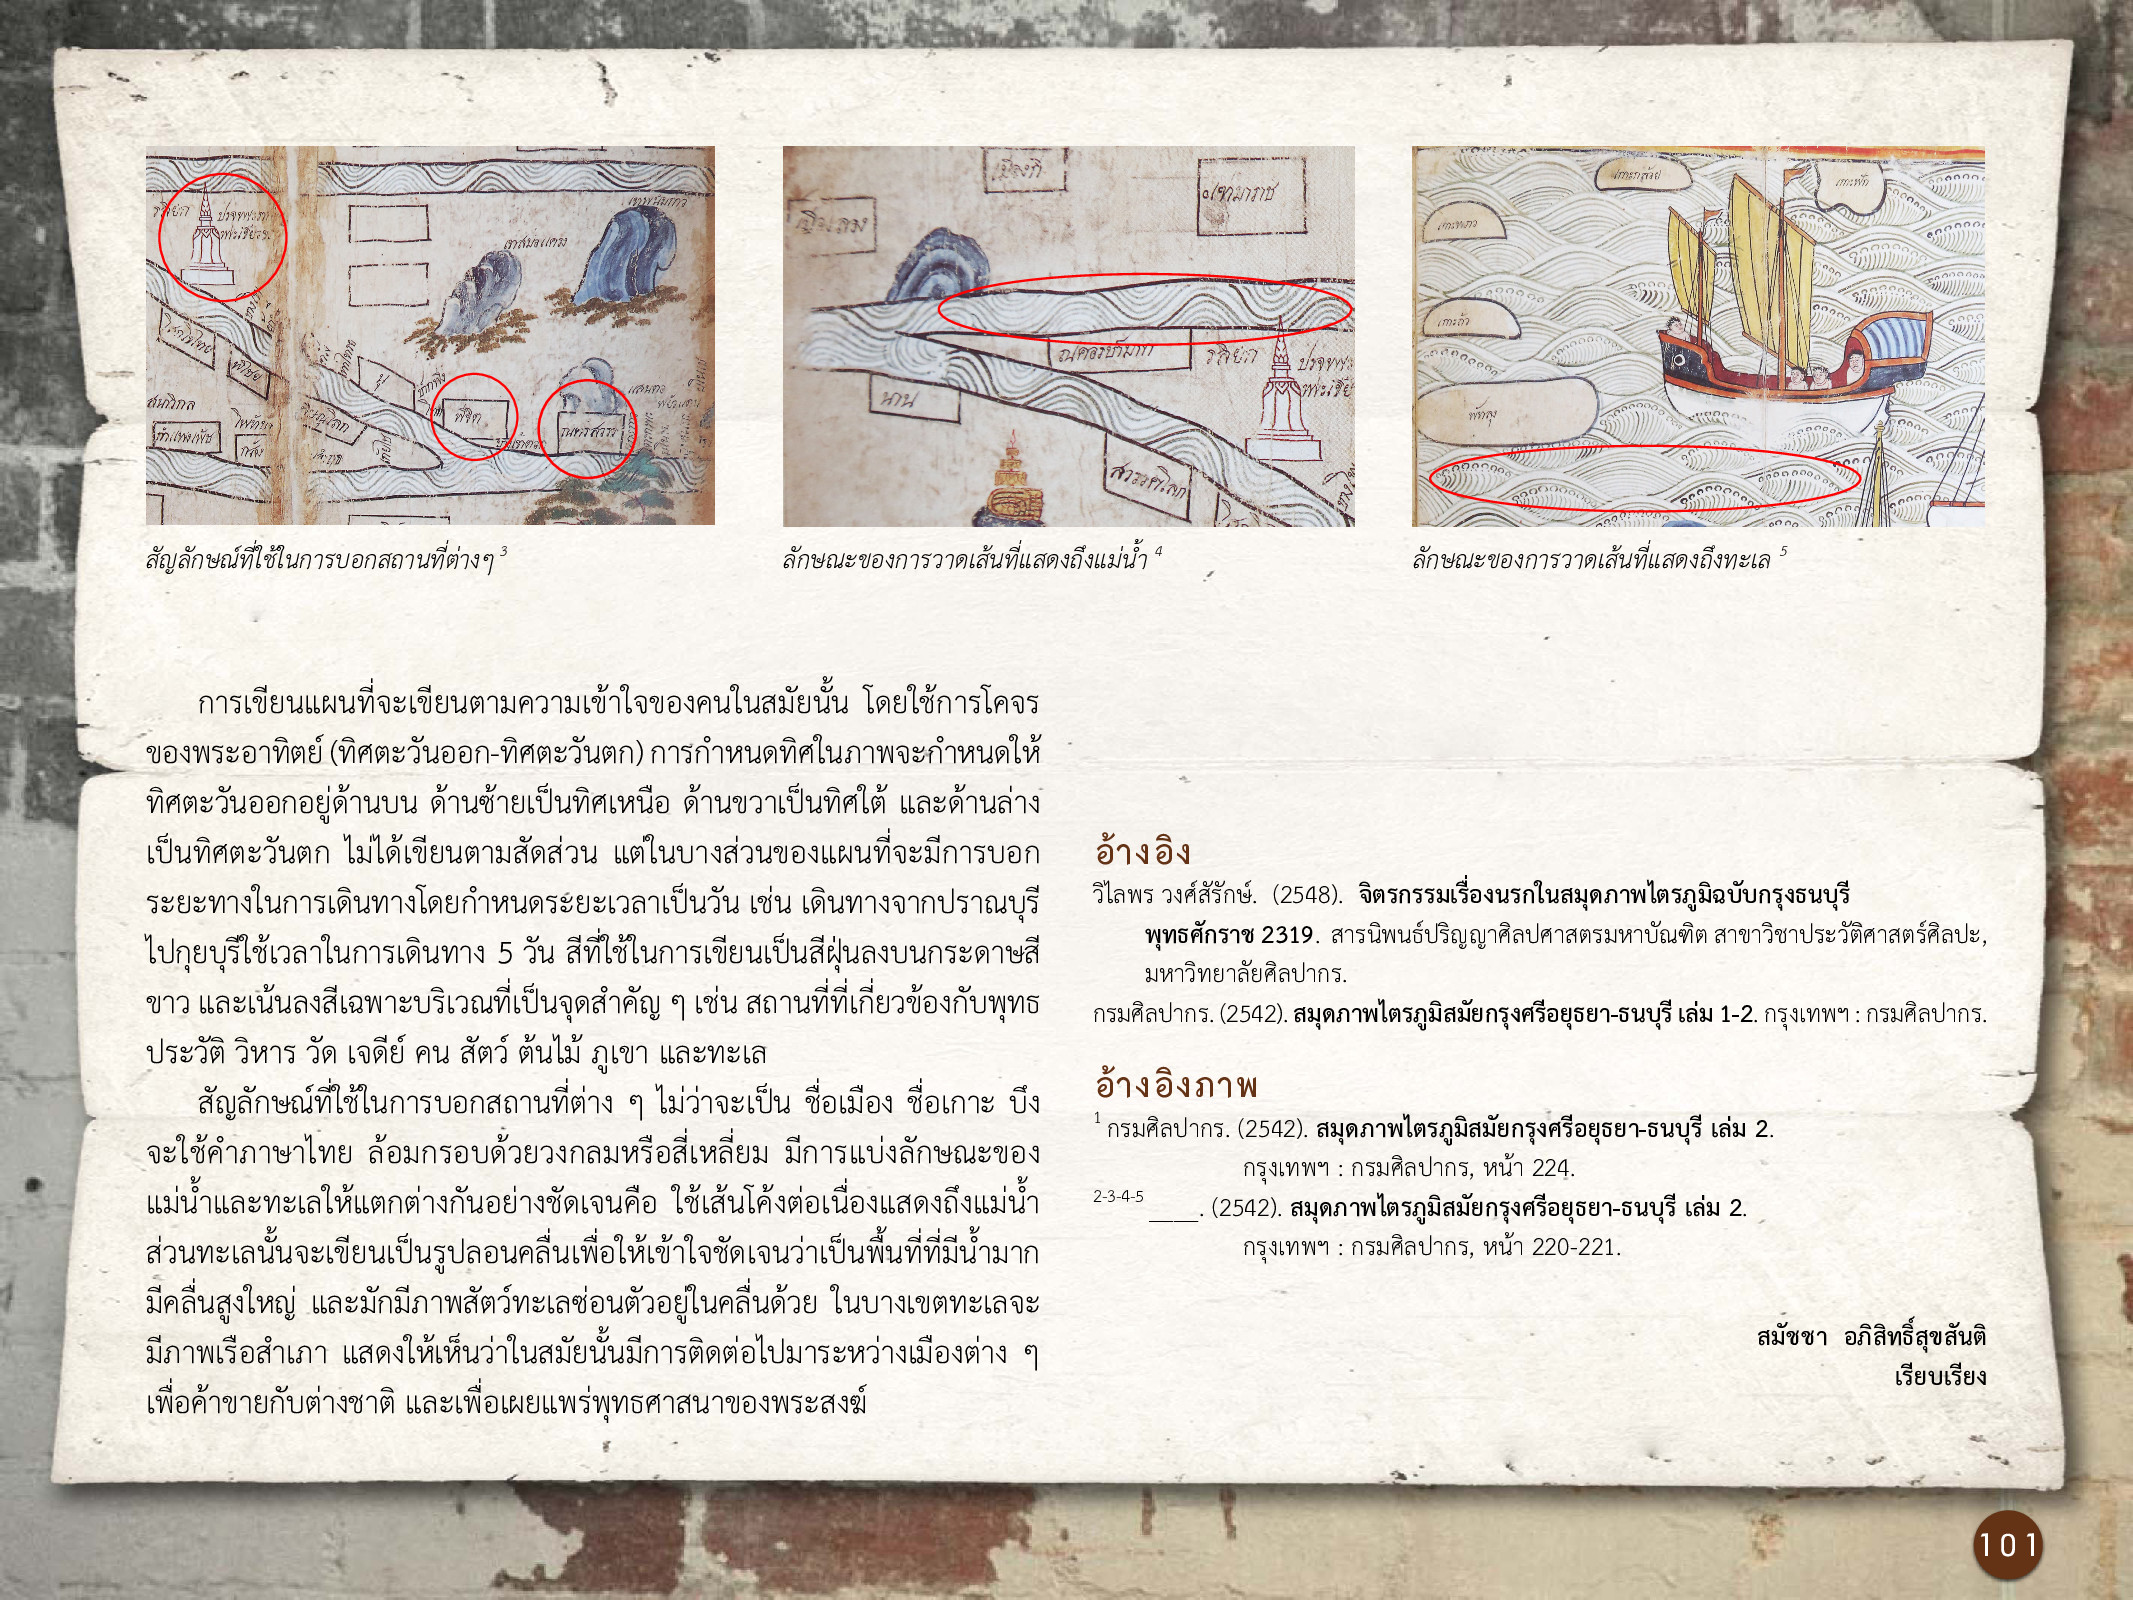 ศิลปกรรมกรุงธนบุรี ./images/encyclopedia/101.jpg